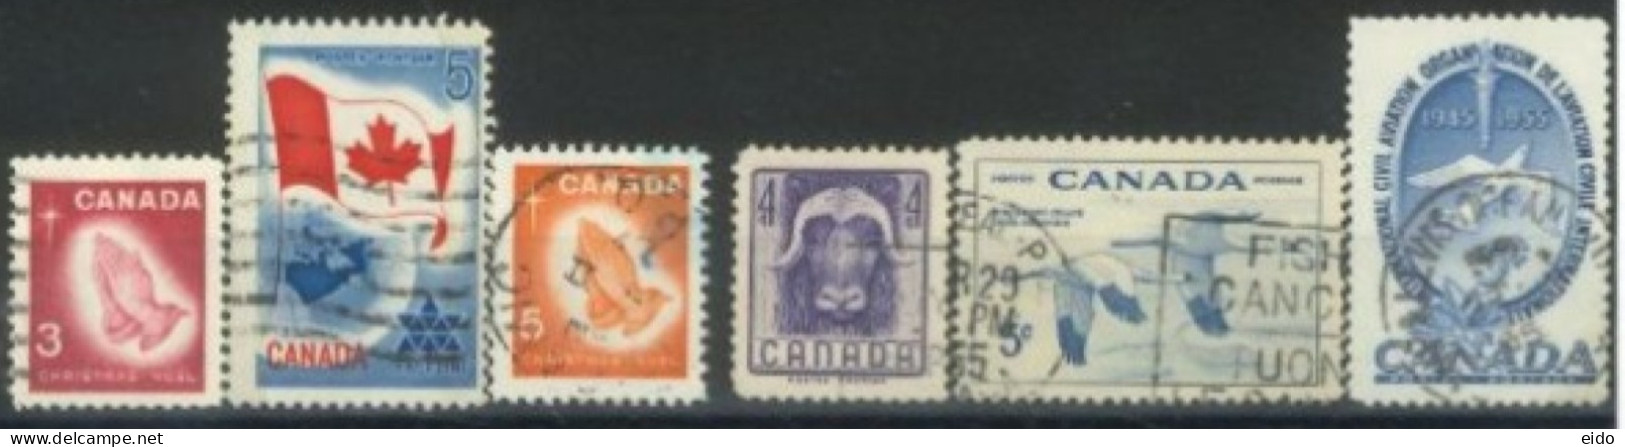 CANADA - 1955/67, STAMPS SET OF 6, USED. - Gebruikt